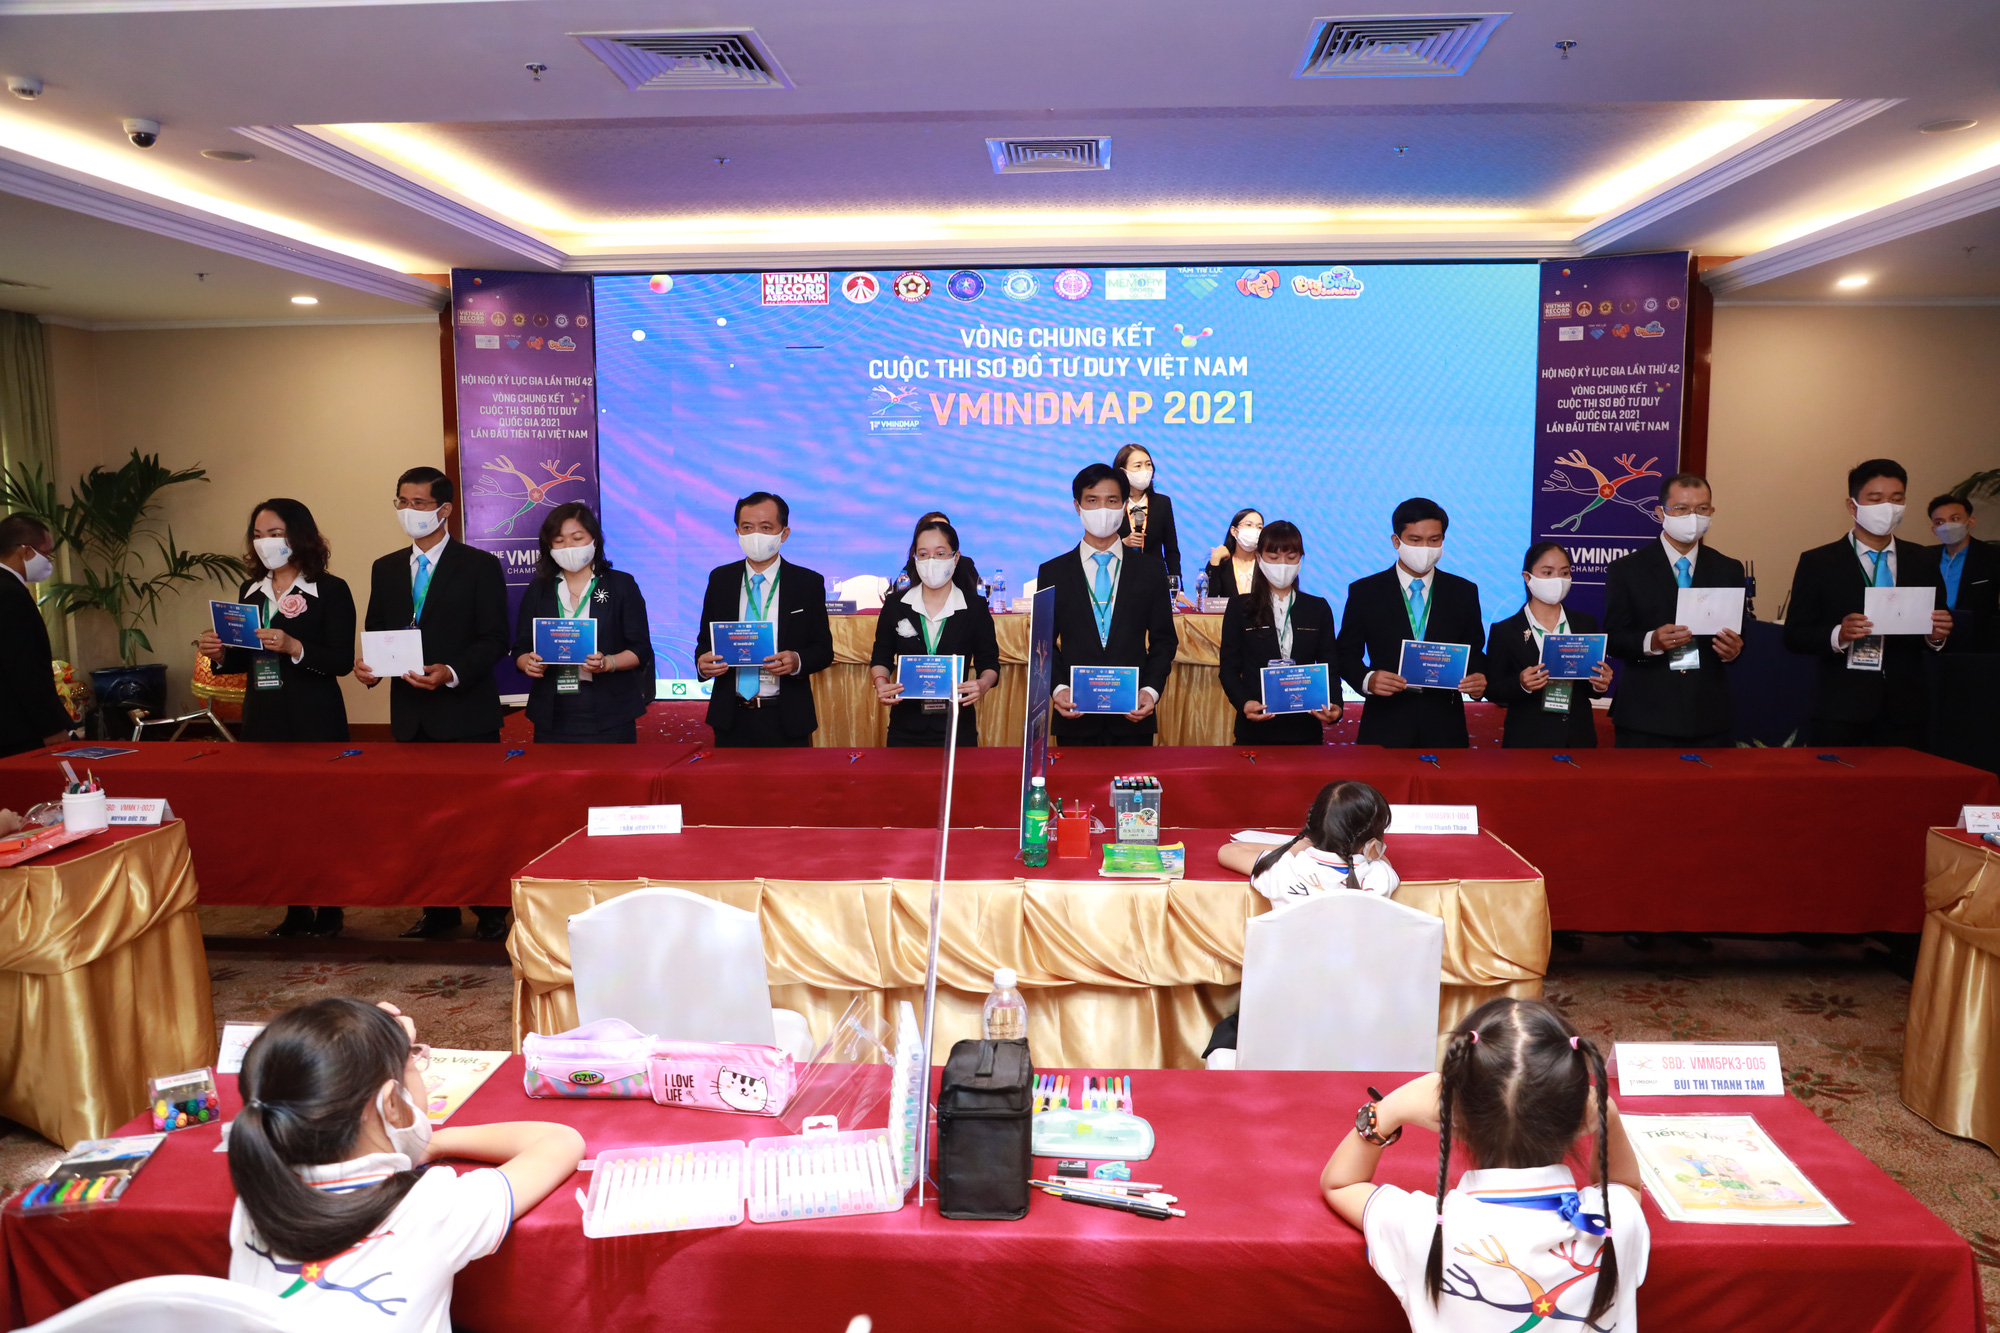 12 thí sinh giành giải nhất cuộc thi Sơ đồ tư duy Việt Nam, tham gia đội tuyển kỷ lục quốc gia - Ảnh 3.